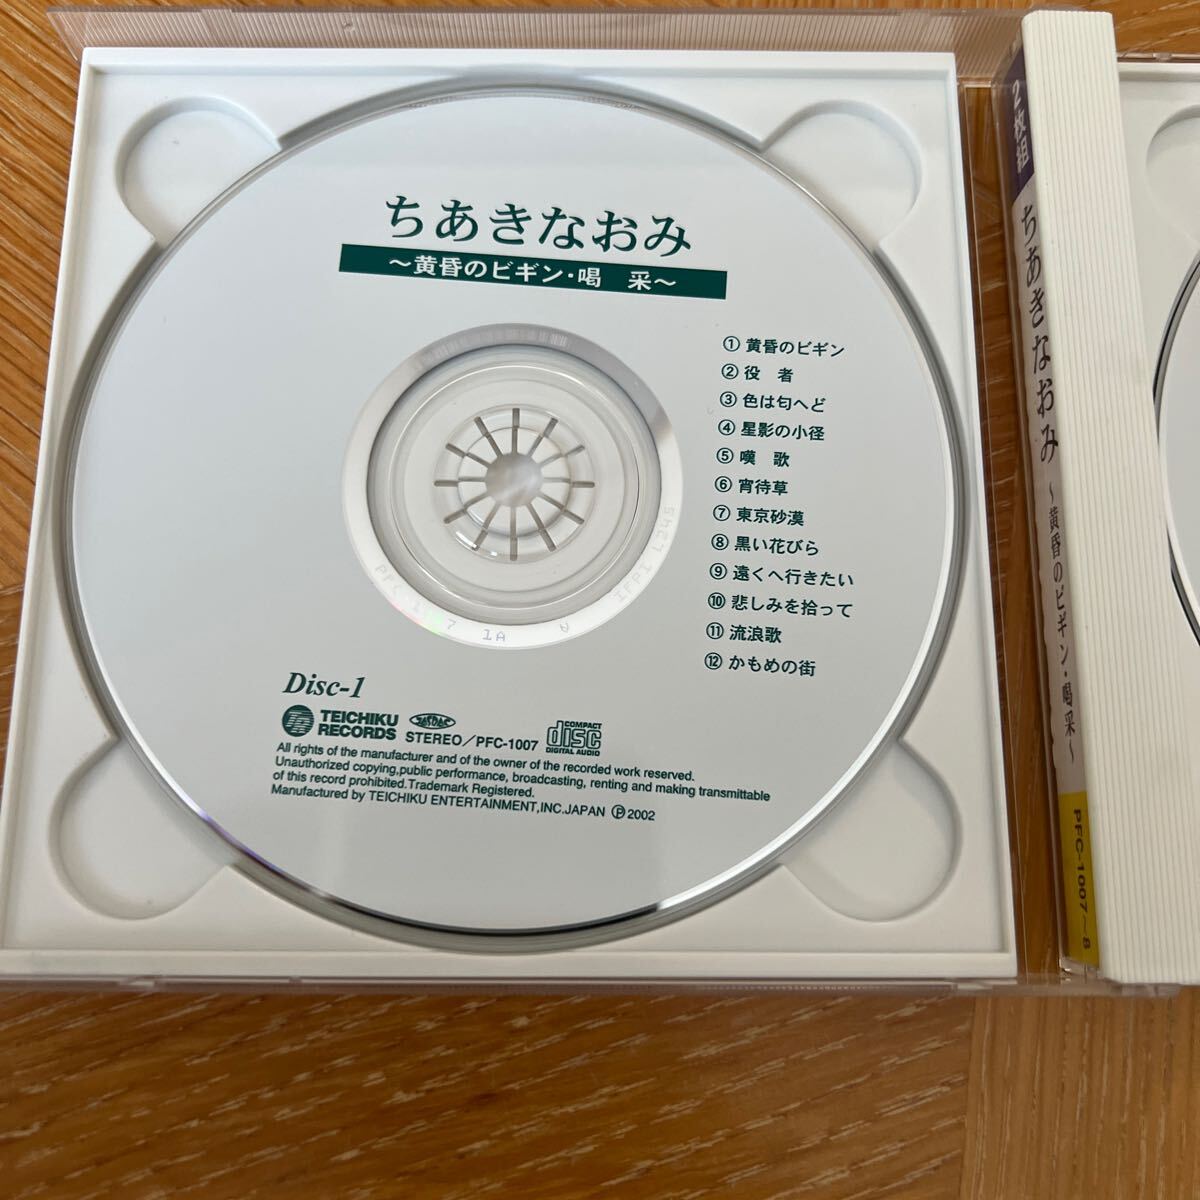 ちあきなおみ 〜黄昏のビギン喝采〜 2CD 2002年 テイチク 廃盤 全24曲 美品 オビなしの画像4